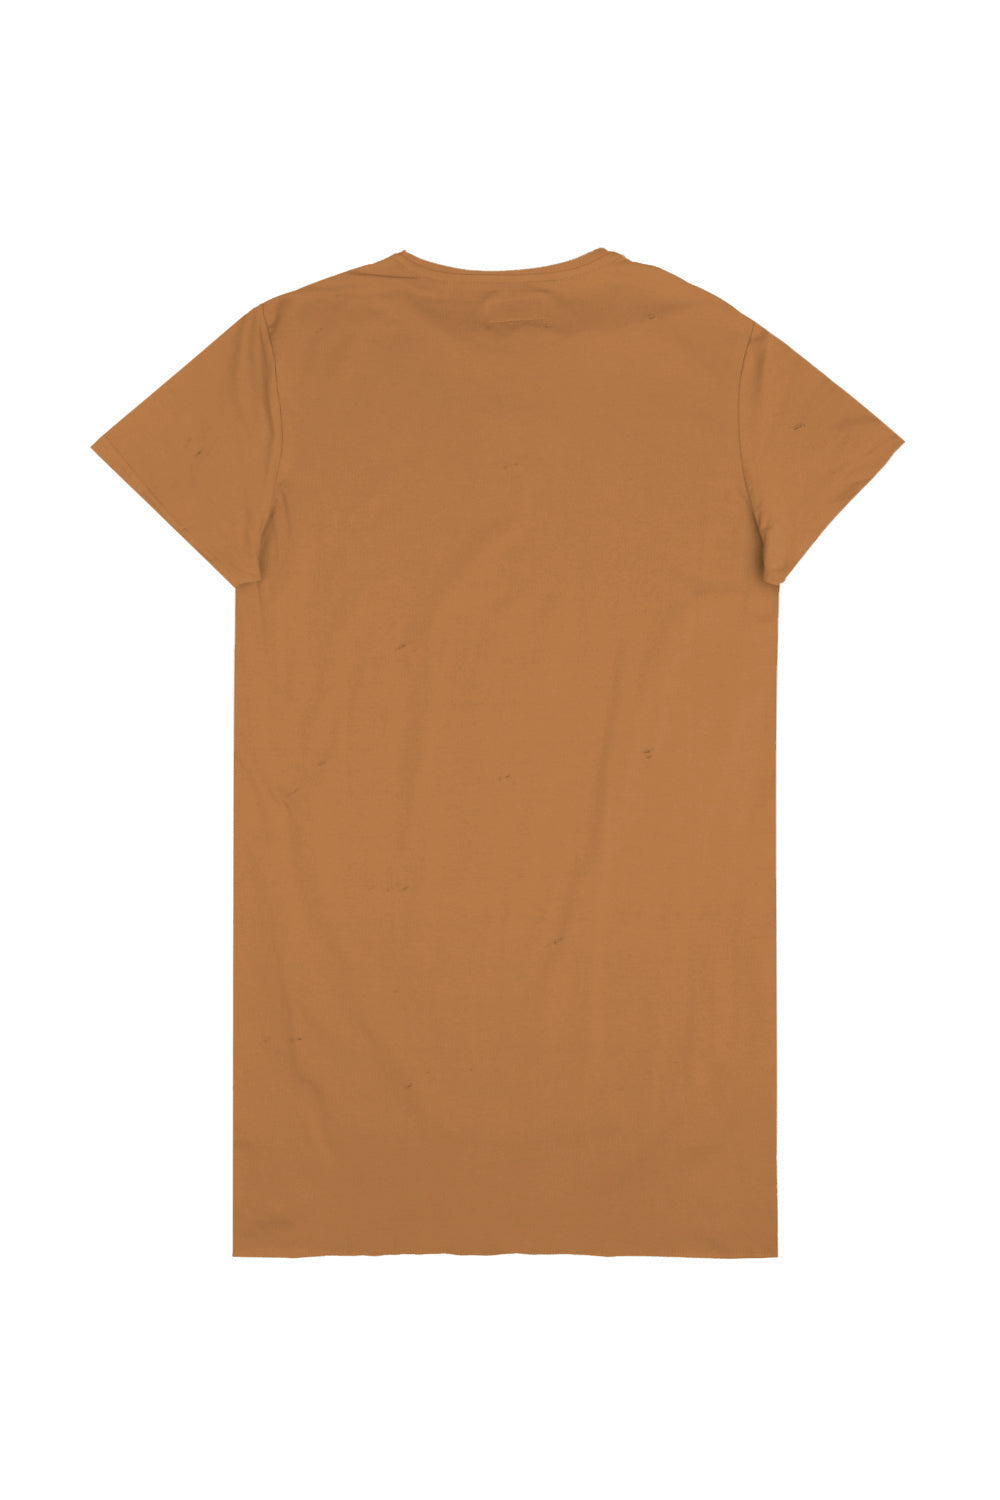 Sixth June - T-shirt asymétrique oversize camel 2131C